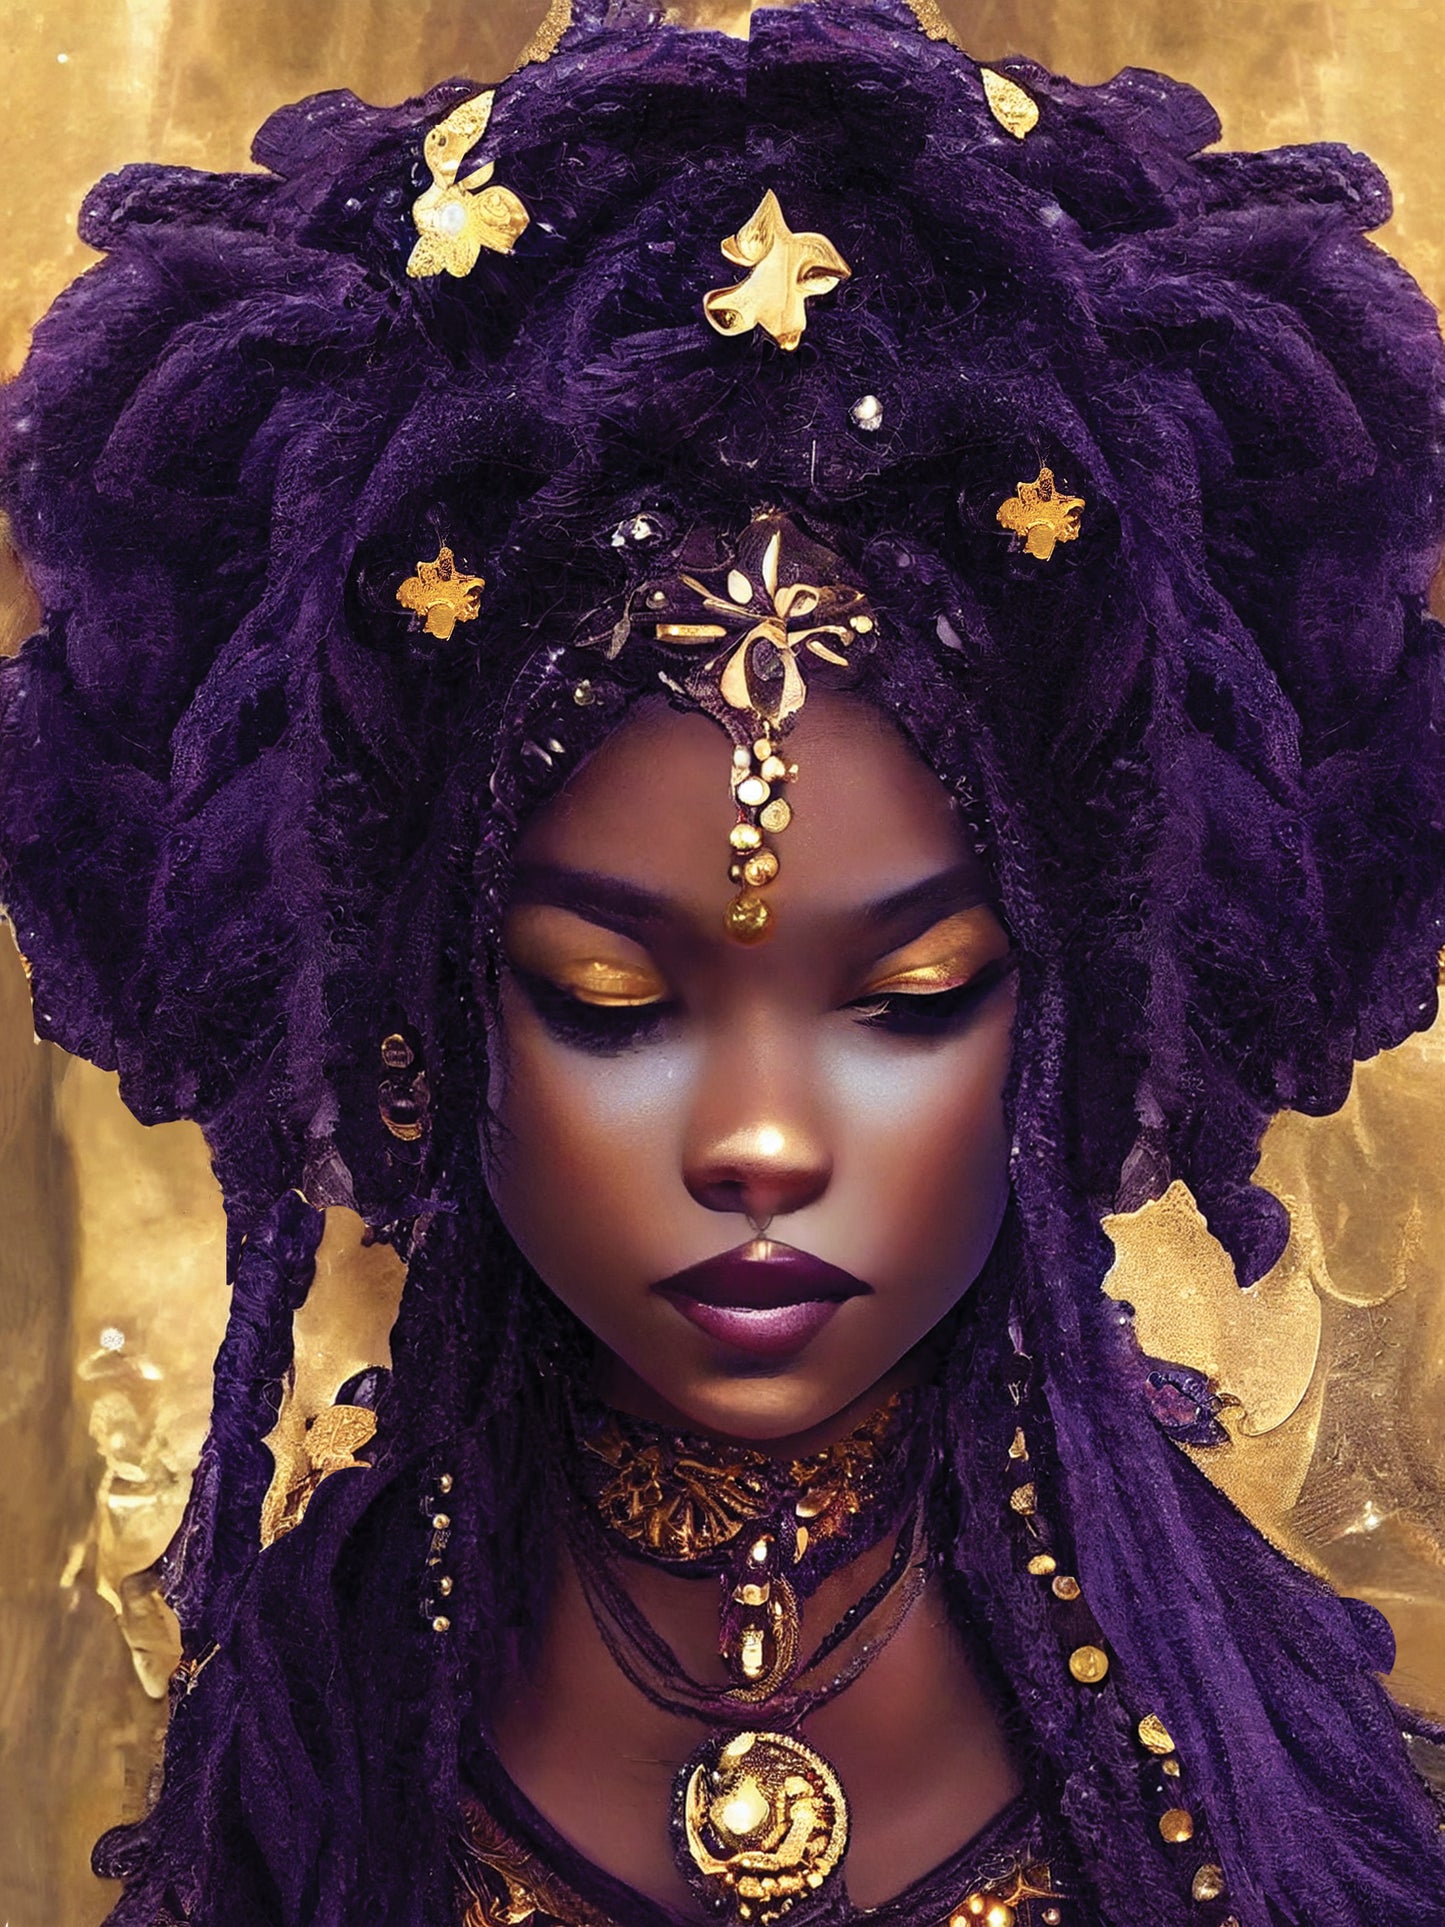 tableau imprimé d'une femme noir inspiré de la peinture et de la déesse éthérée à la peau sombre, longs cheveux violets et noirs avec des perles ornées et des pièces d'or.